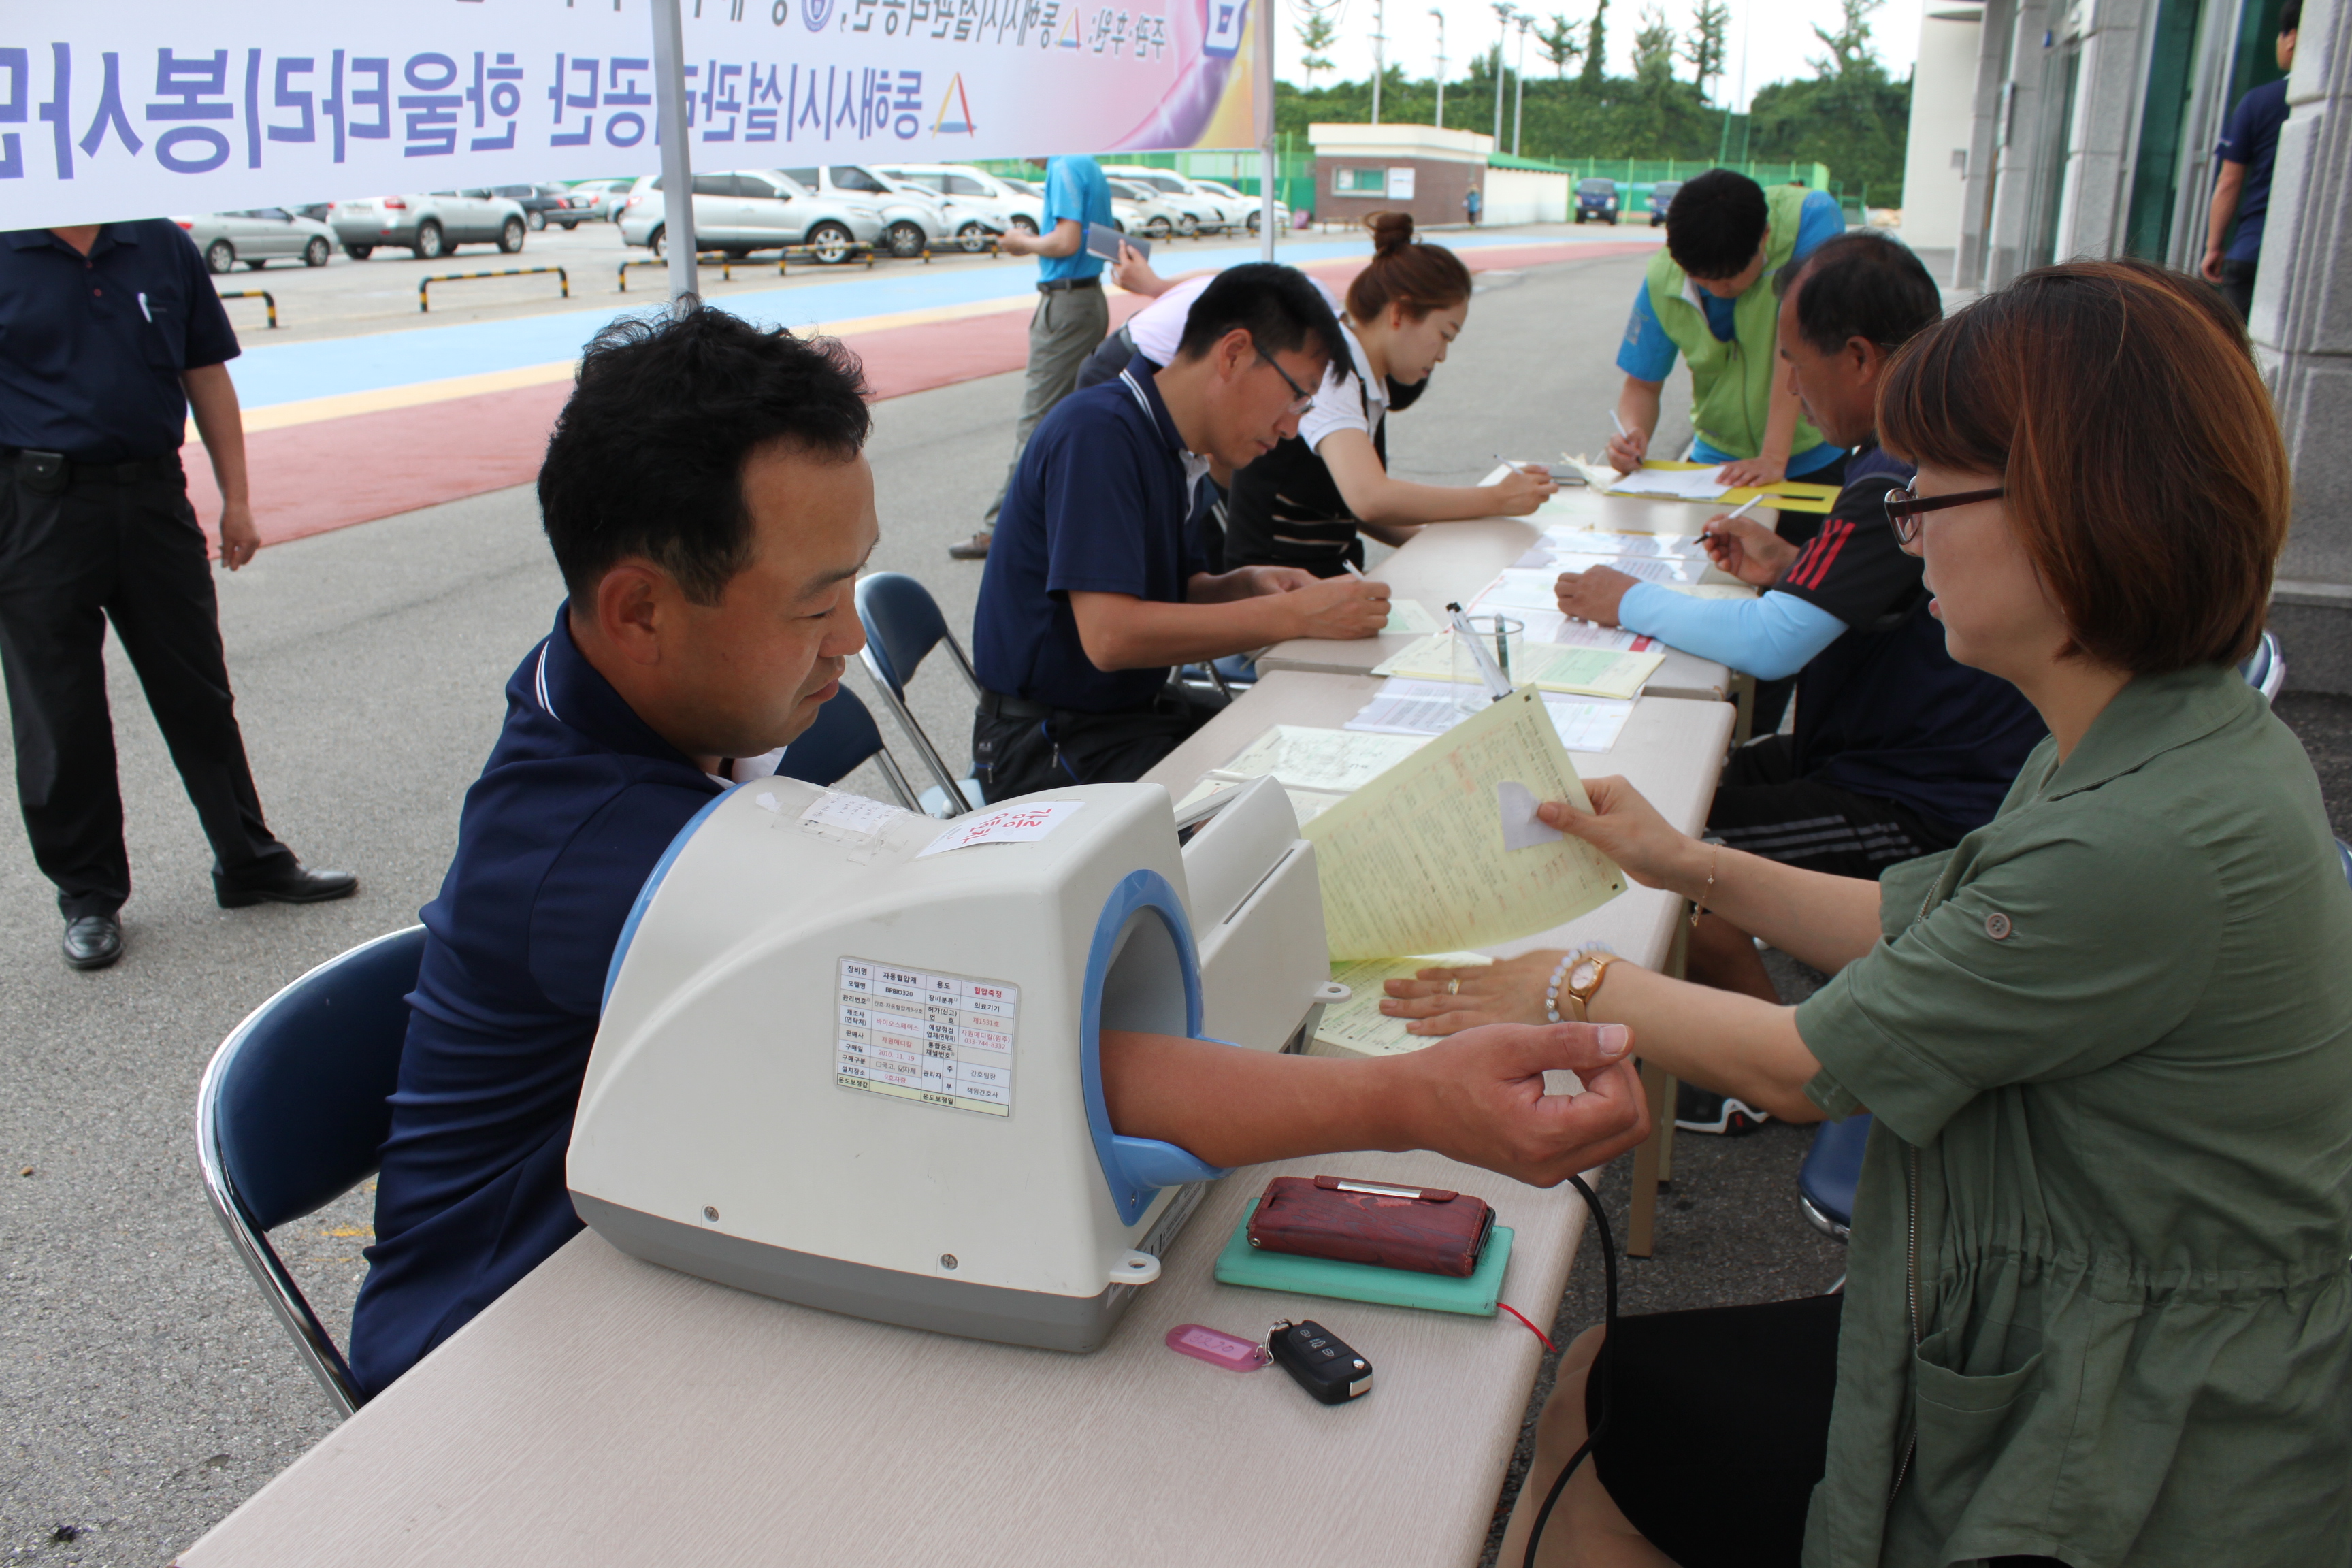 2014년 공단 한울타리봉사단 "제3회 희망나눔 헌혈" 행사 관련 이미지(IMG_7205.JPG)